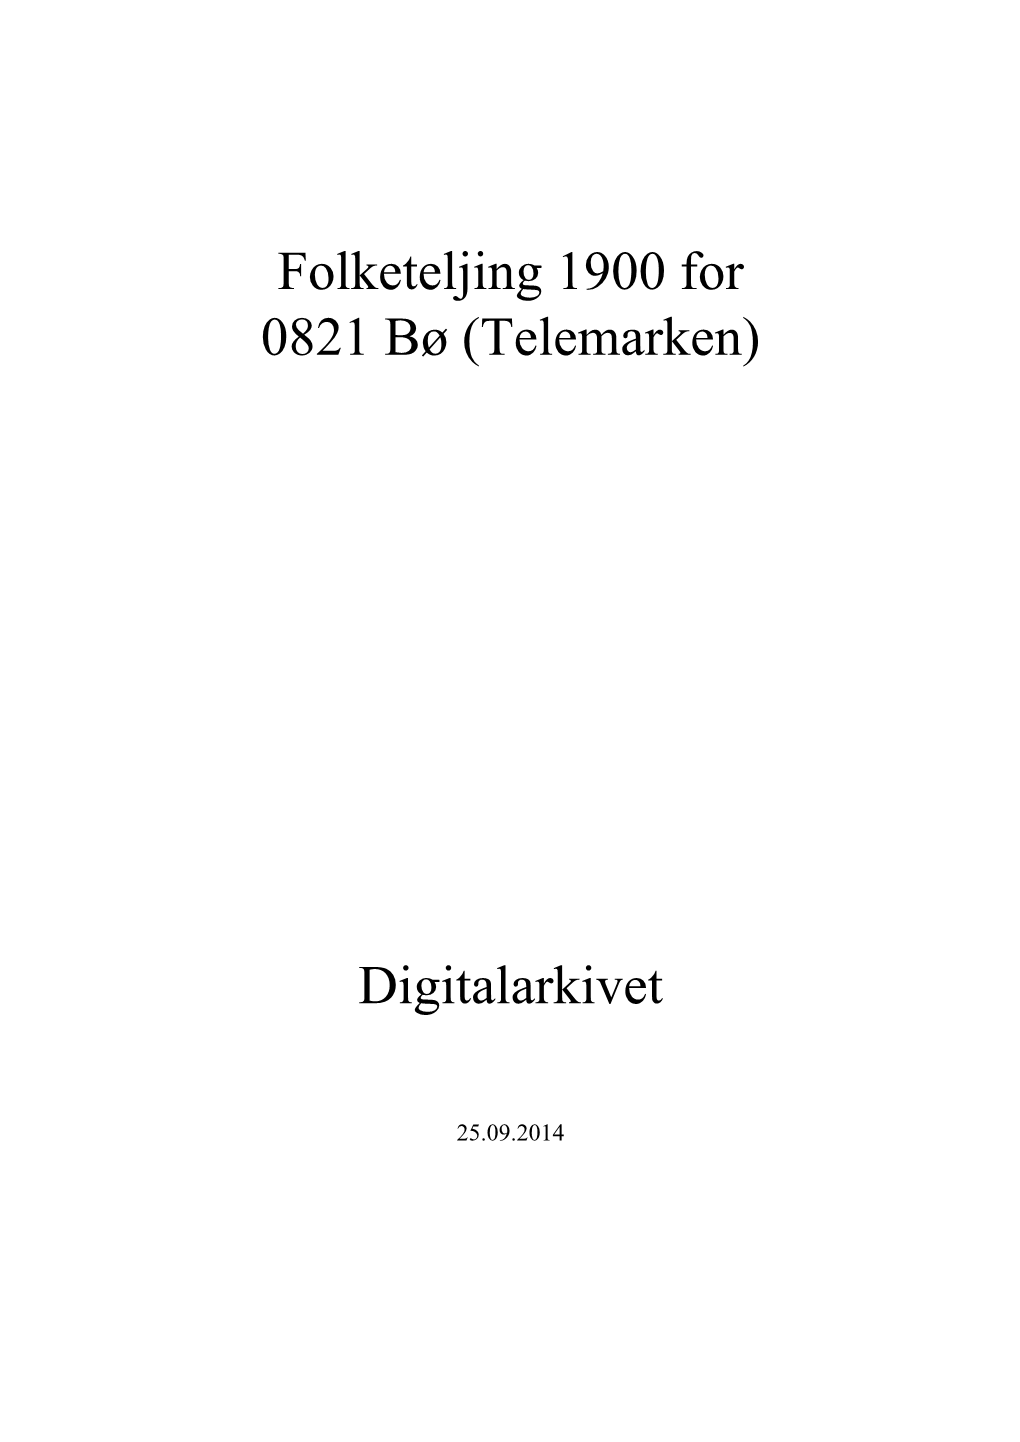 Folketeljing 1900 for 0821 Bø (Telemarken) Digitalarkivet